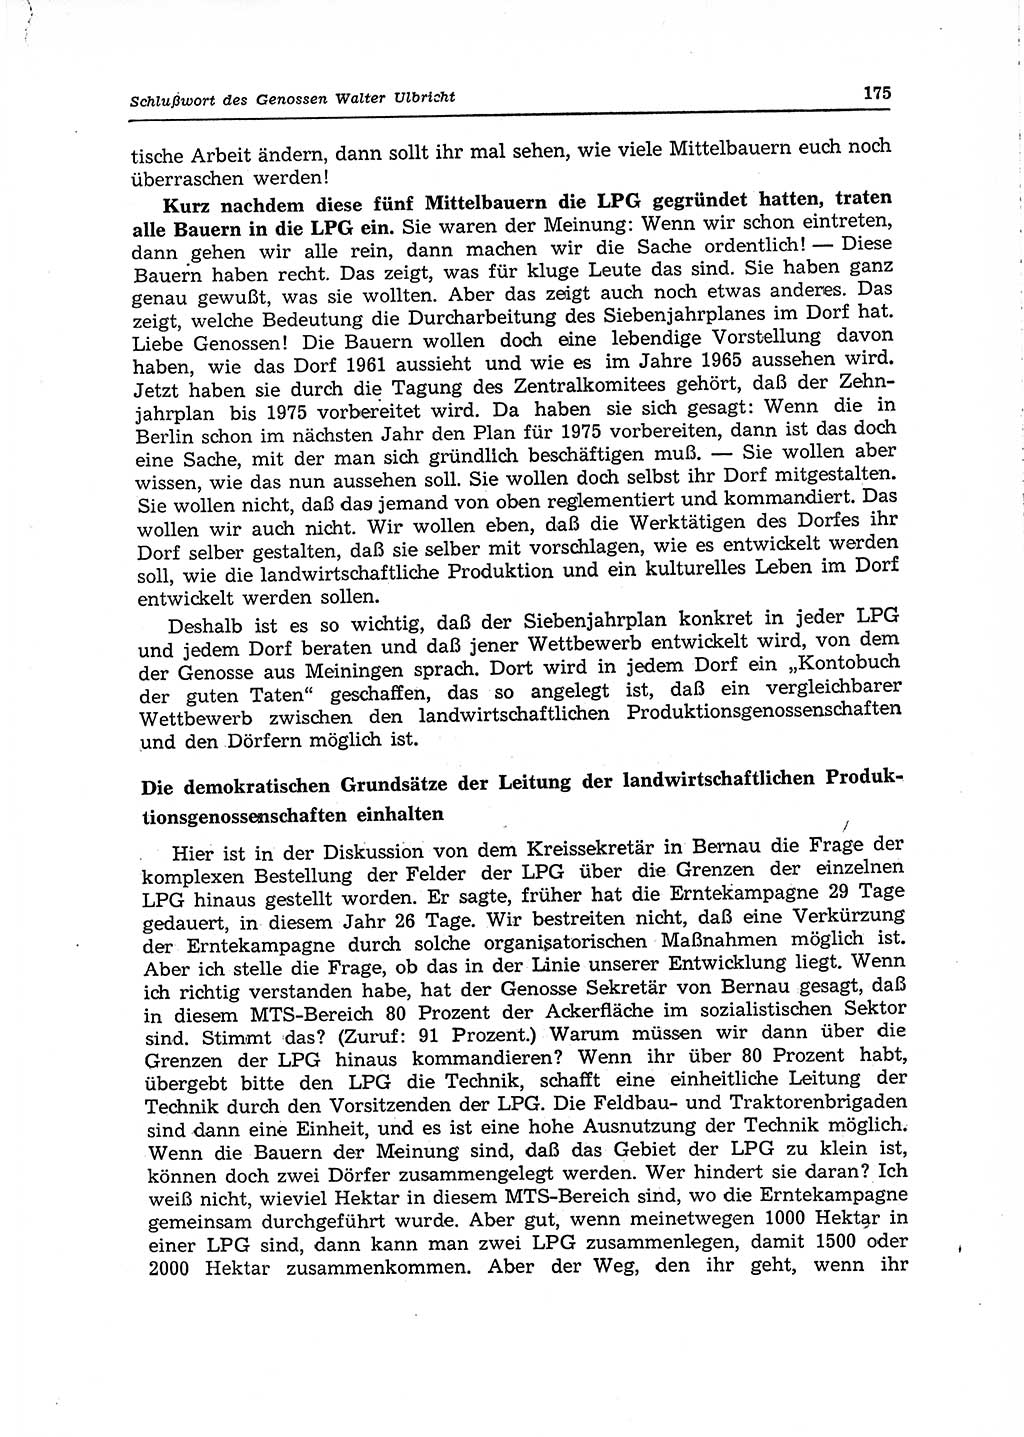 Neuer Weg (NW), Organ des Zentralkomitees (ZK) der SED (Sozialistische Einheitspartei Deutschlands) für Fragen des Parteilebens, 15. Jahrgang [Deutsche Demokratische Republik (DDR)] 1960, Seite 175 (NW ZK SED DDR 1960, S. 175)